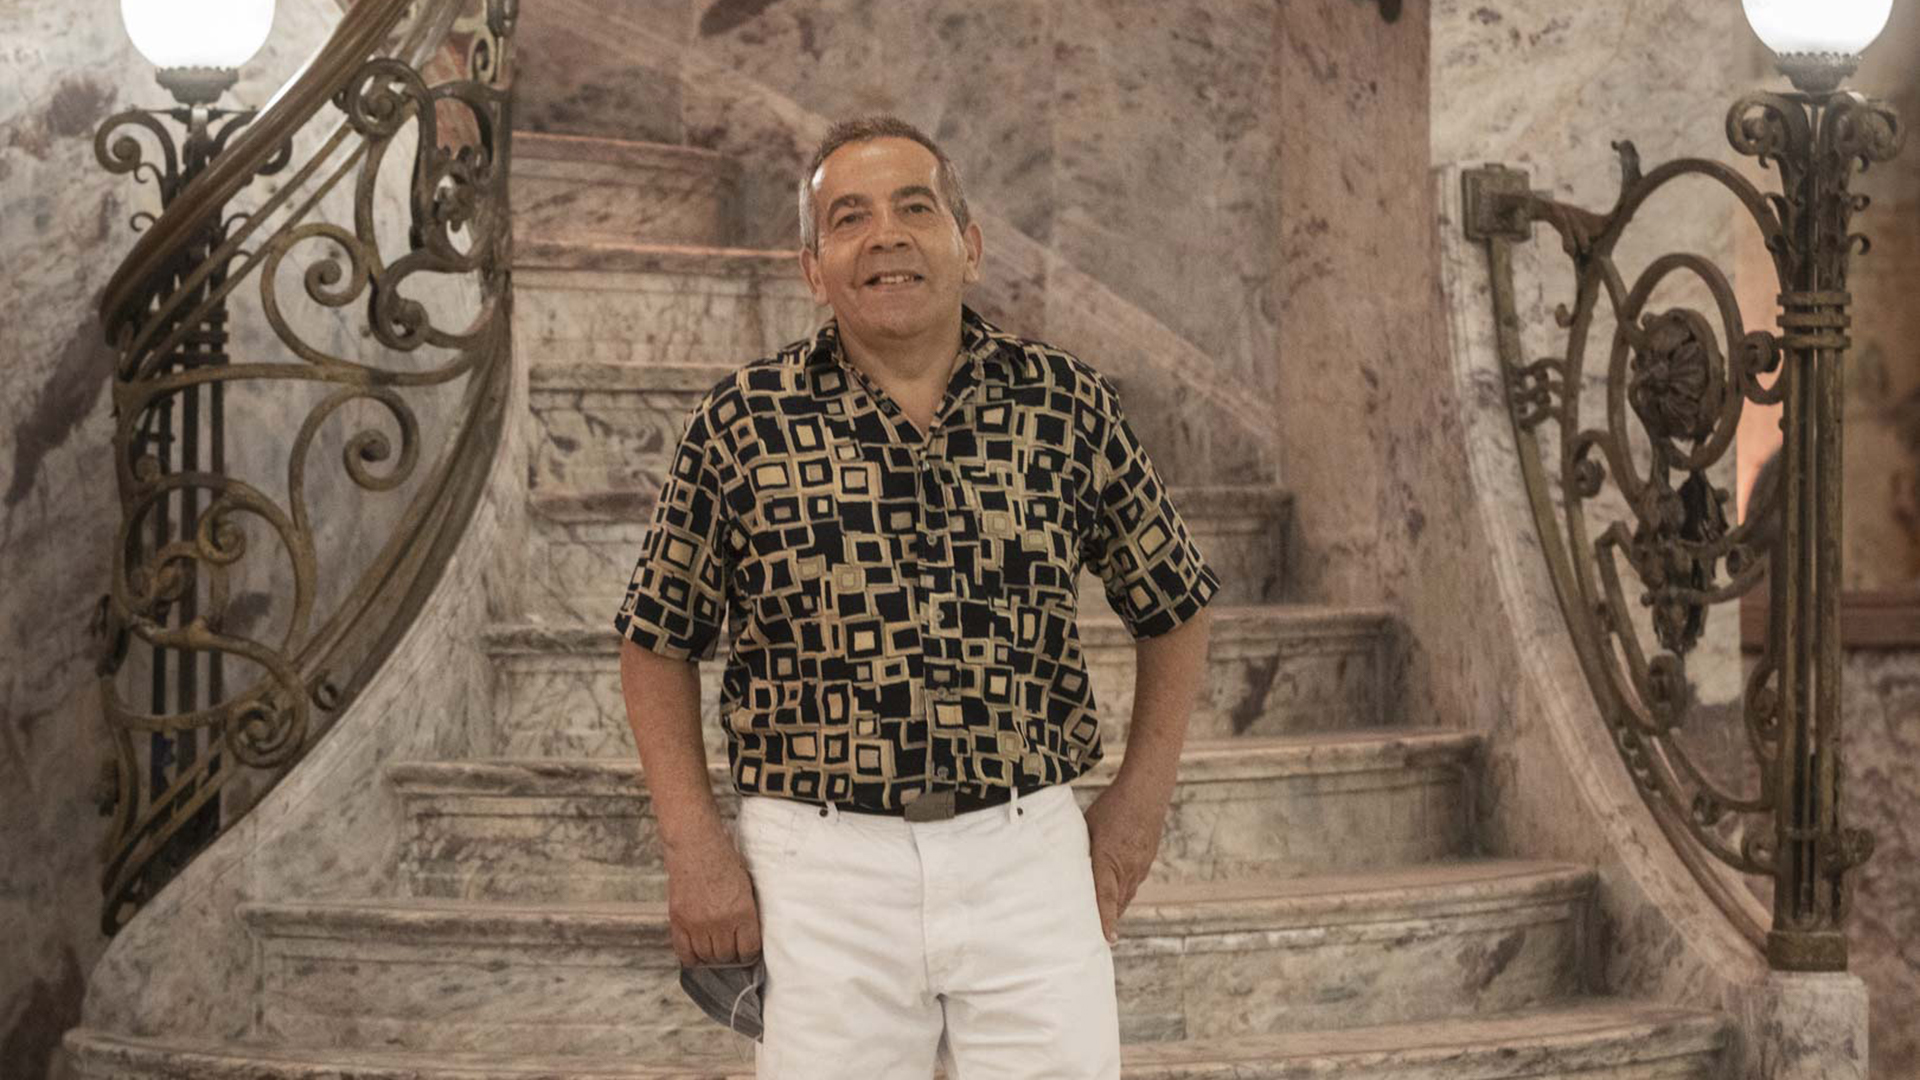 Edmundo Diaz fue mozo de salón entre 1981 y 1991. “Fue mi escuela y mi aprendizaje”, reconoce (Guadalupe Alonso - Comisión del Molino)